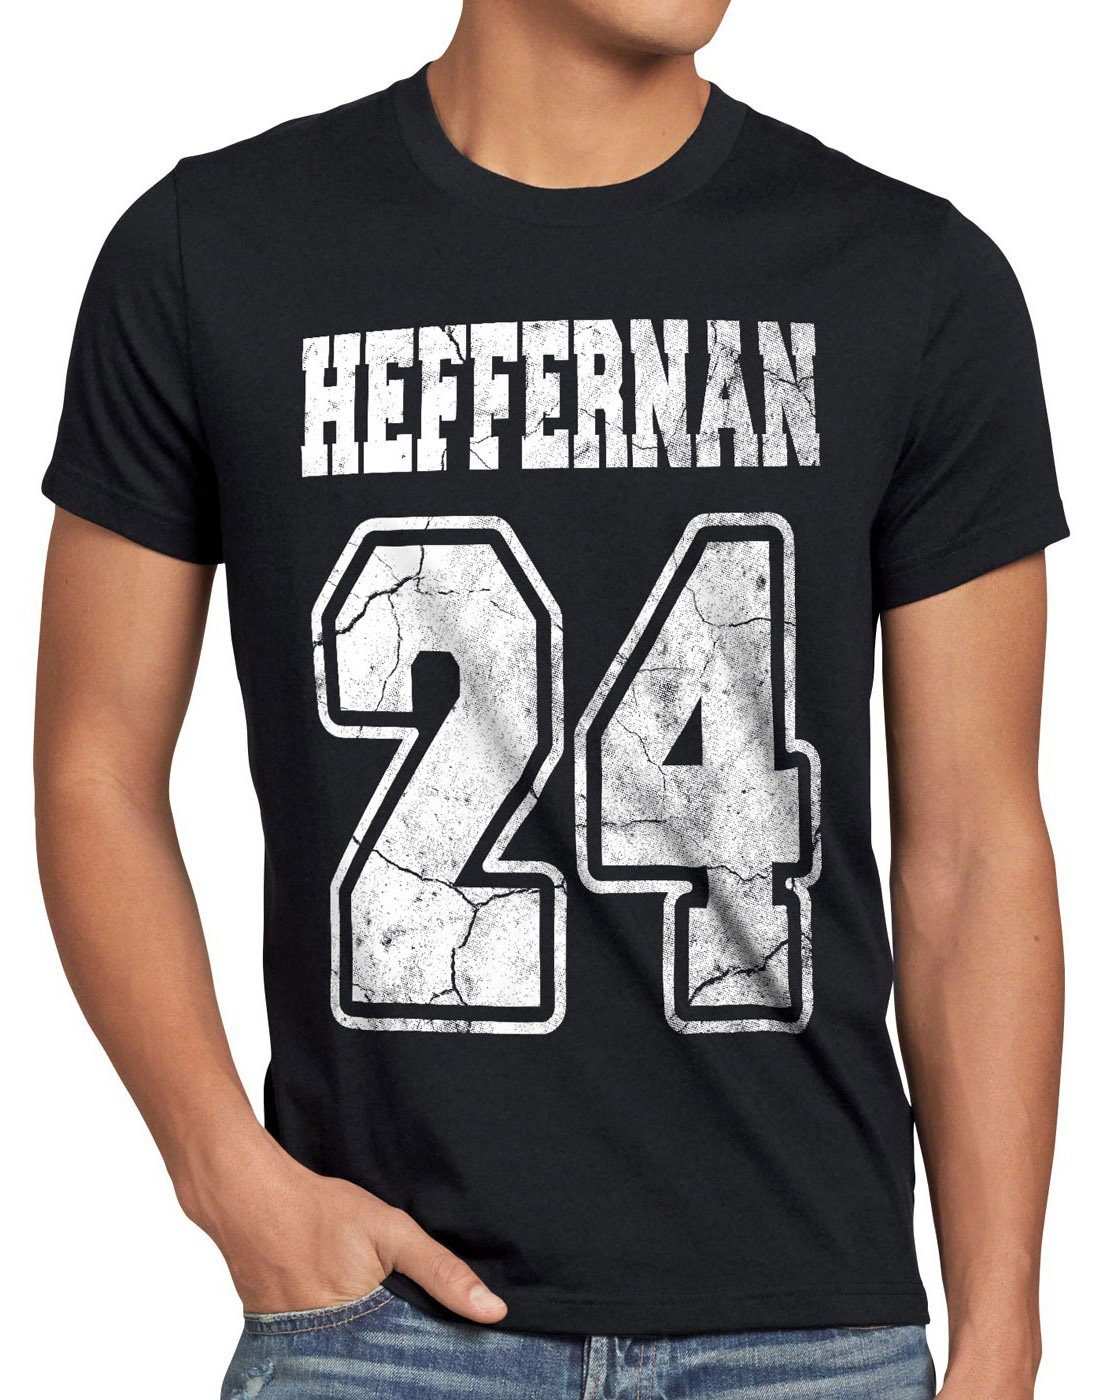 style3 Print-Shirt king Herren queens spooner T-Shirt of Heffernan schwarz doug coopers sitcom IPS the 24